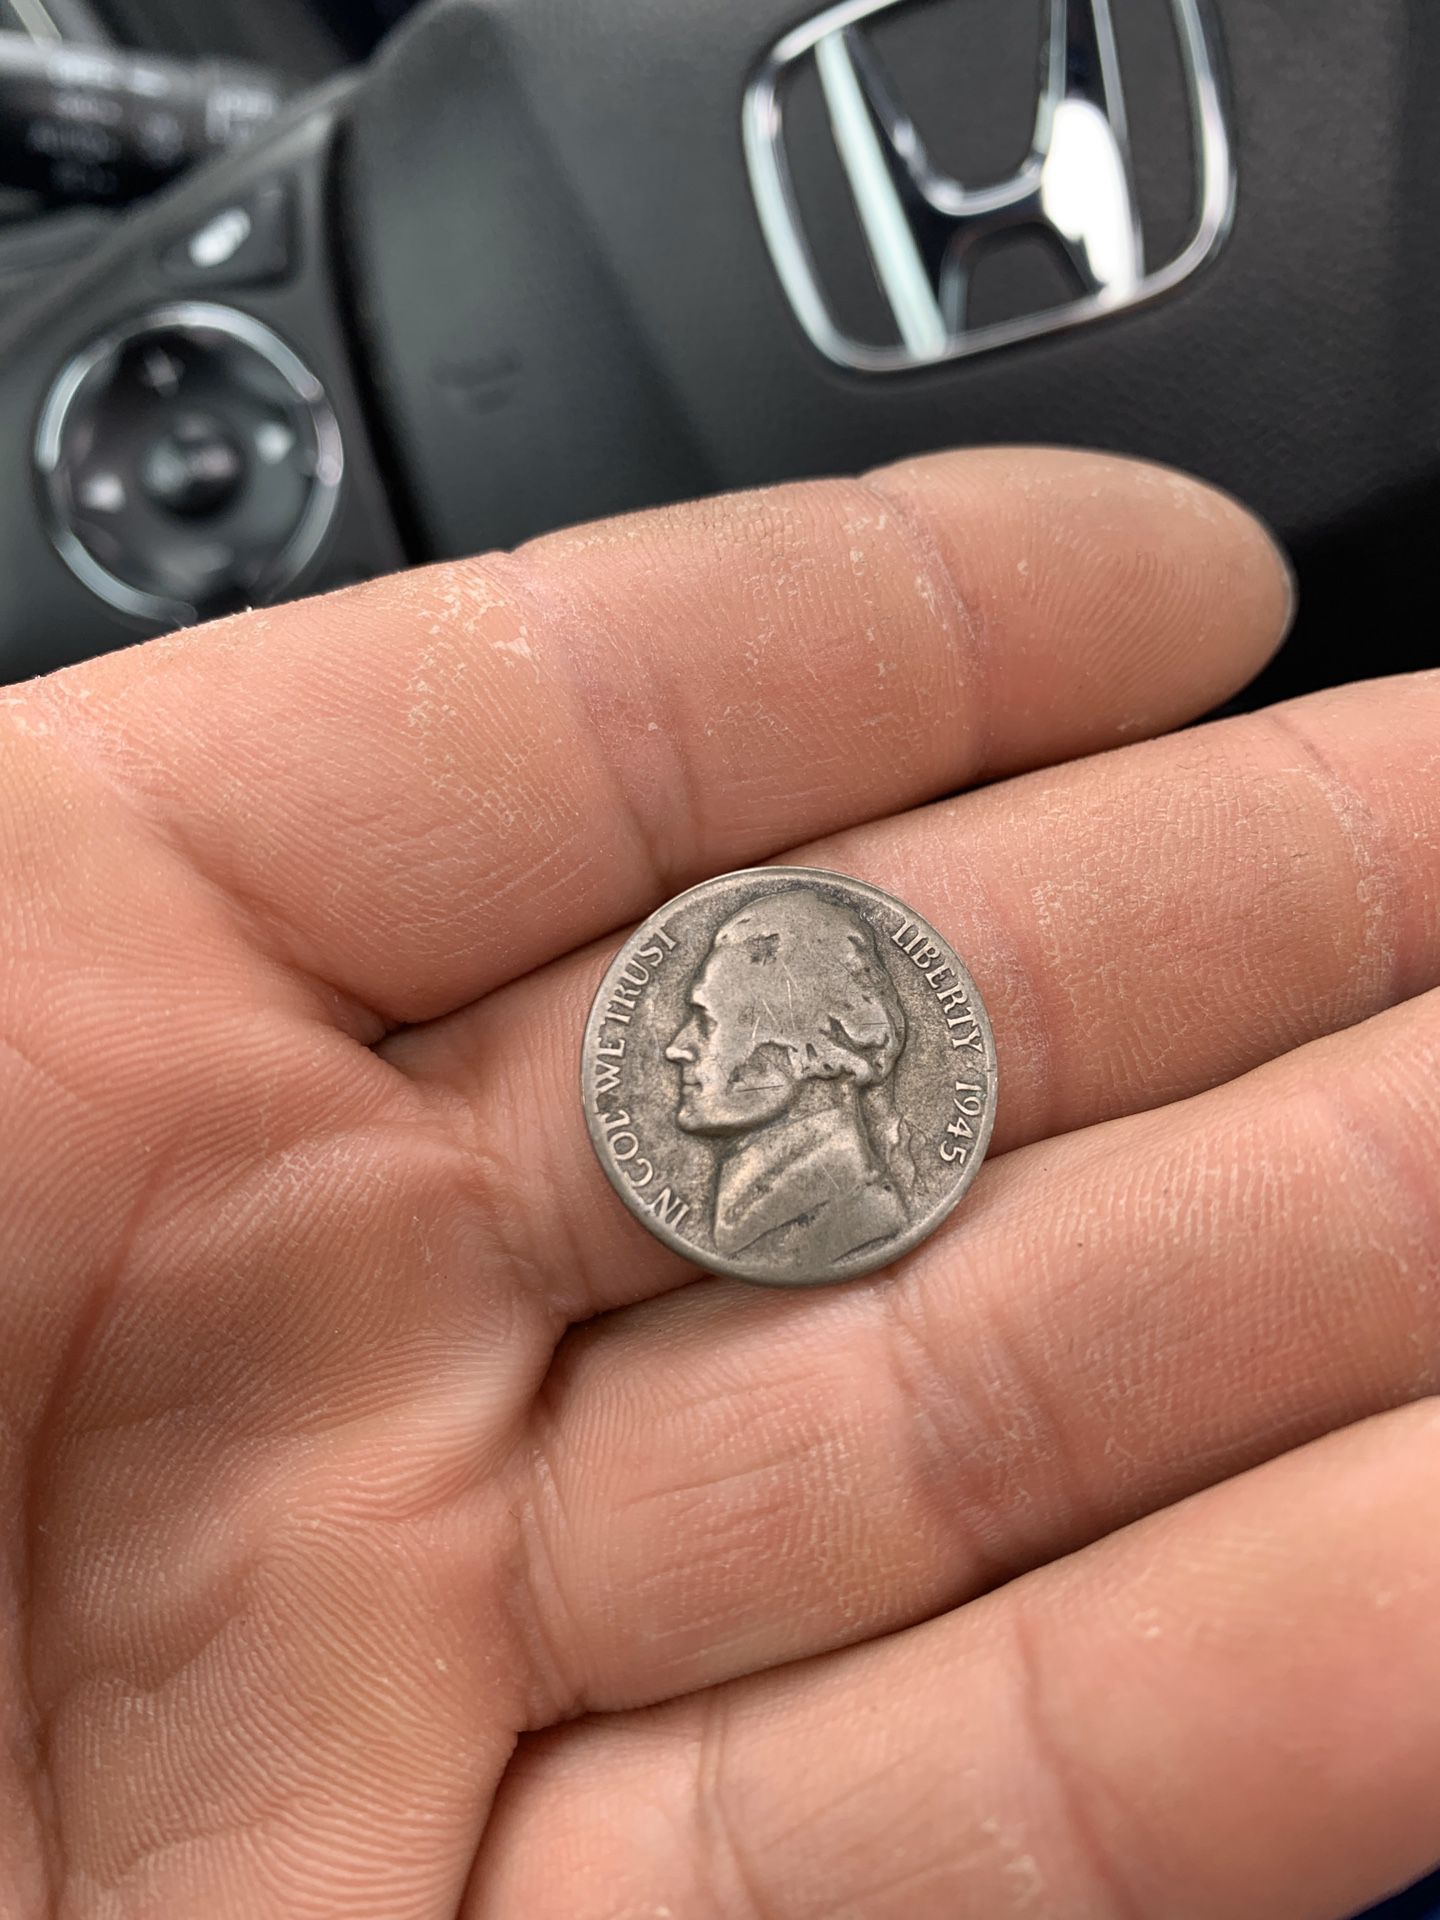 1945 nickel